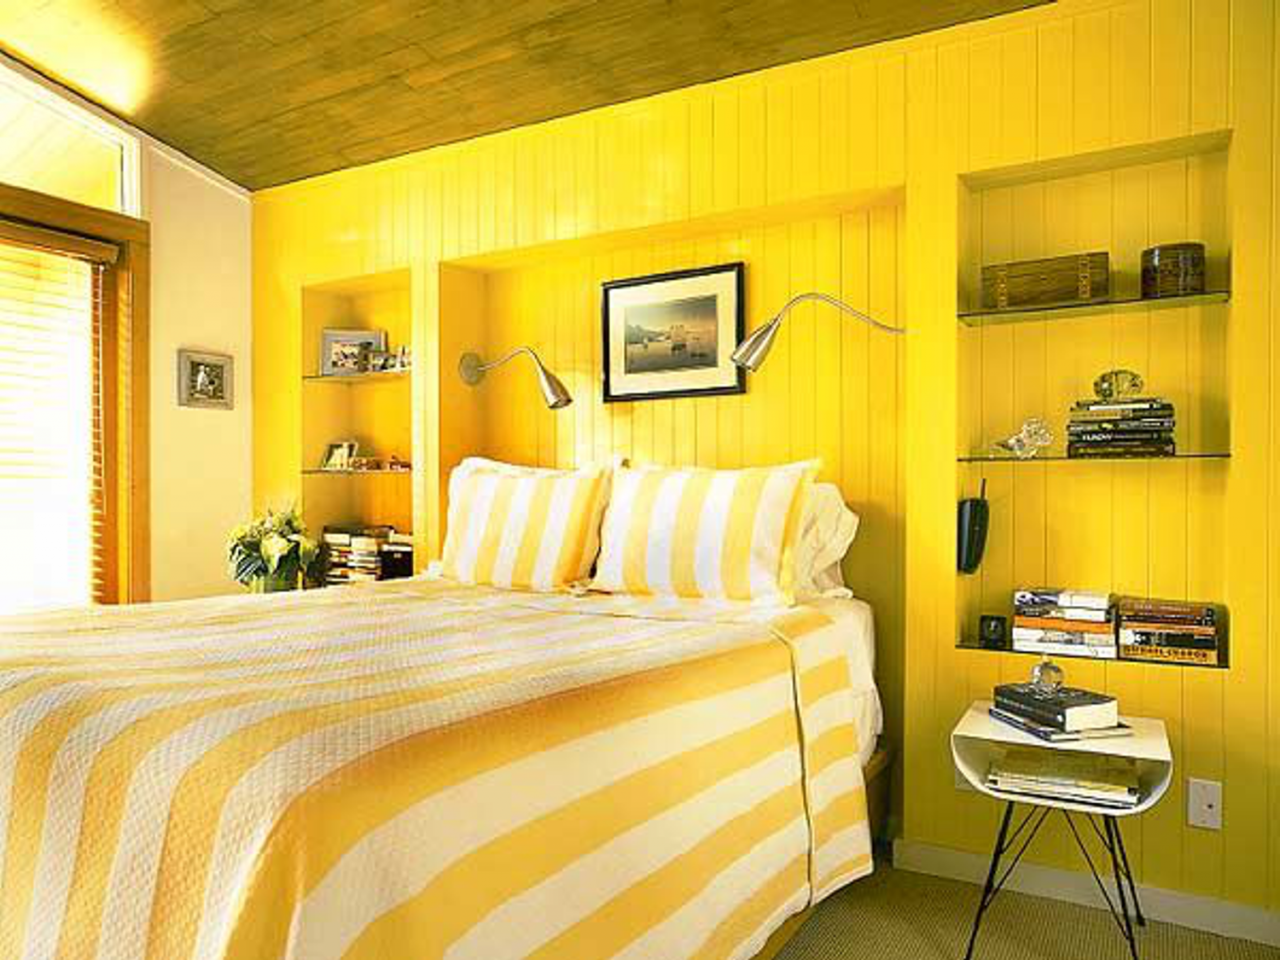 Обои желтого цвета для стен